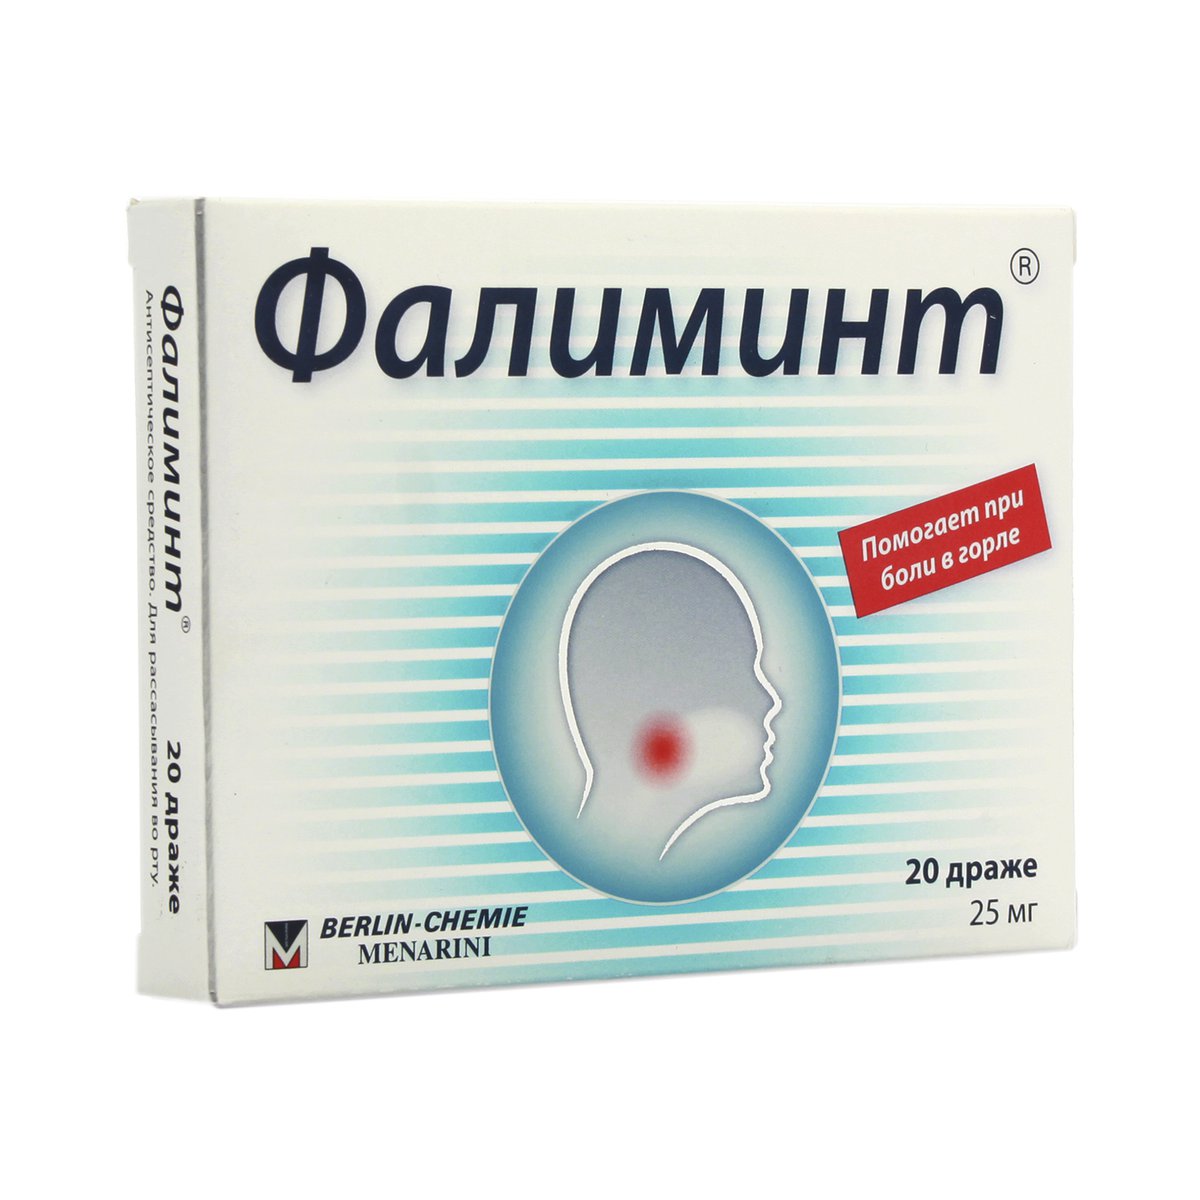 Фалиминт (драже, 20 шт, 25 мг) - цена,  онлайн , описание .